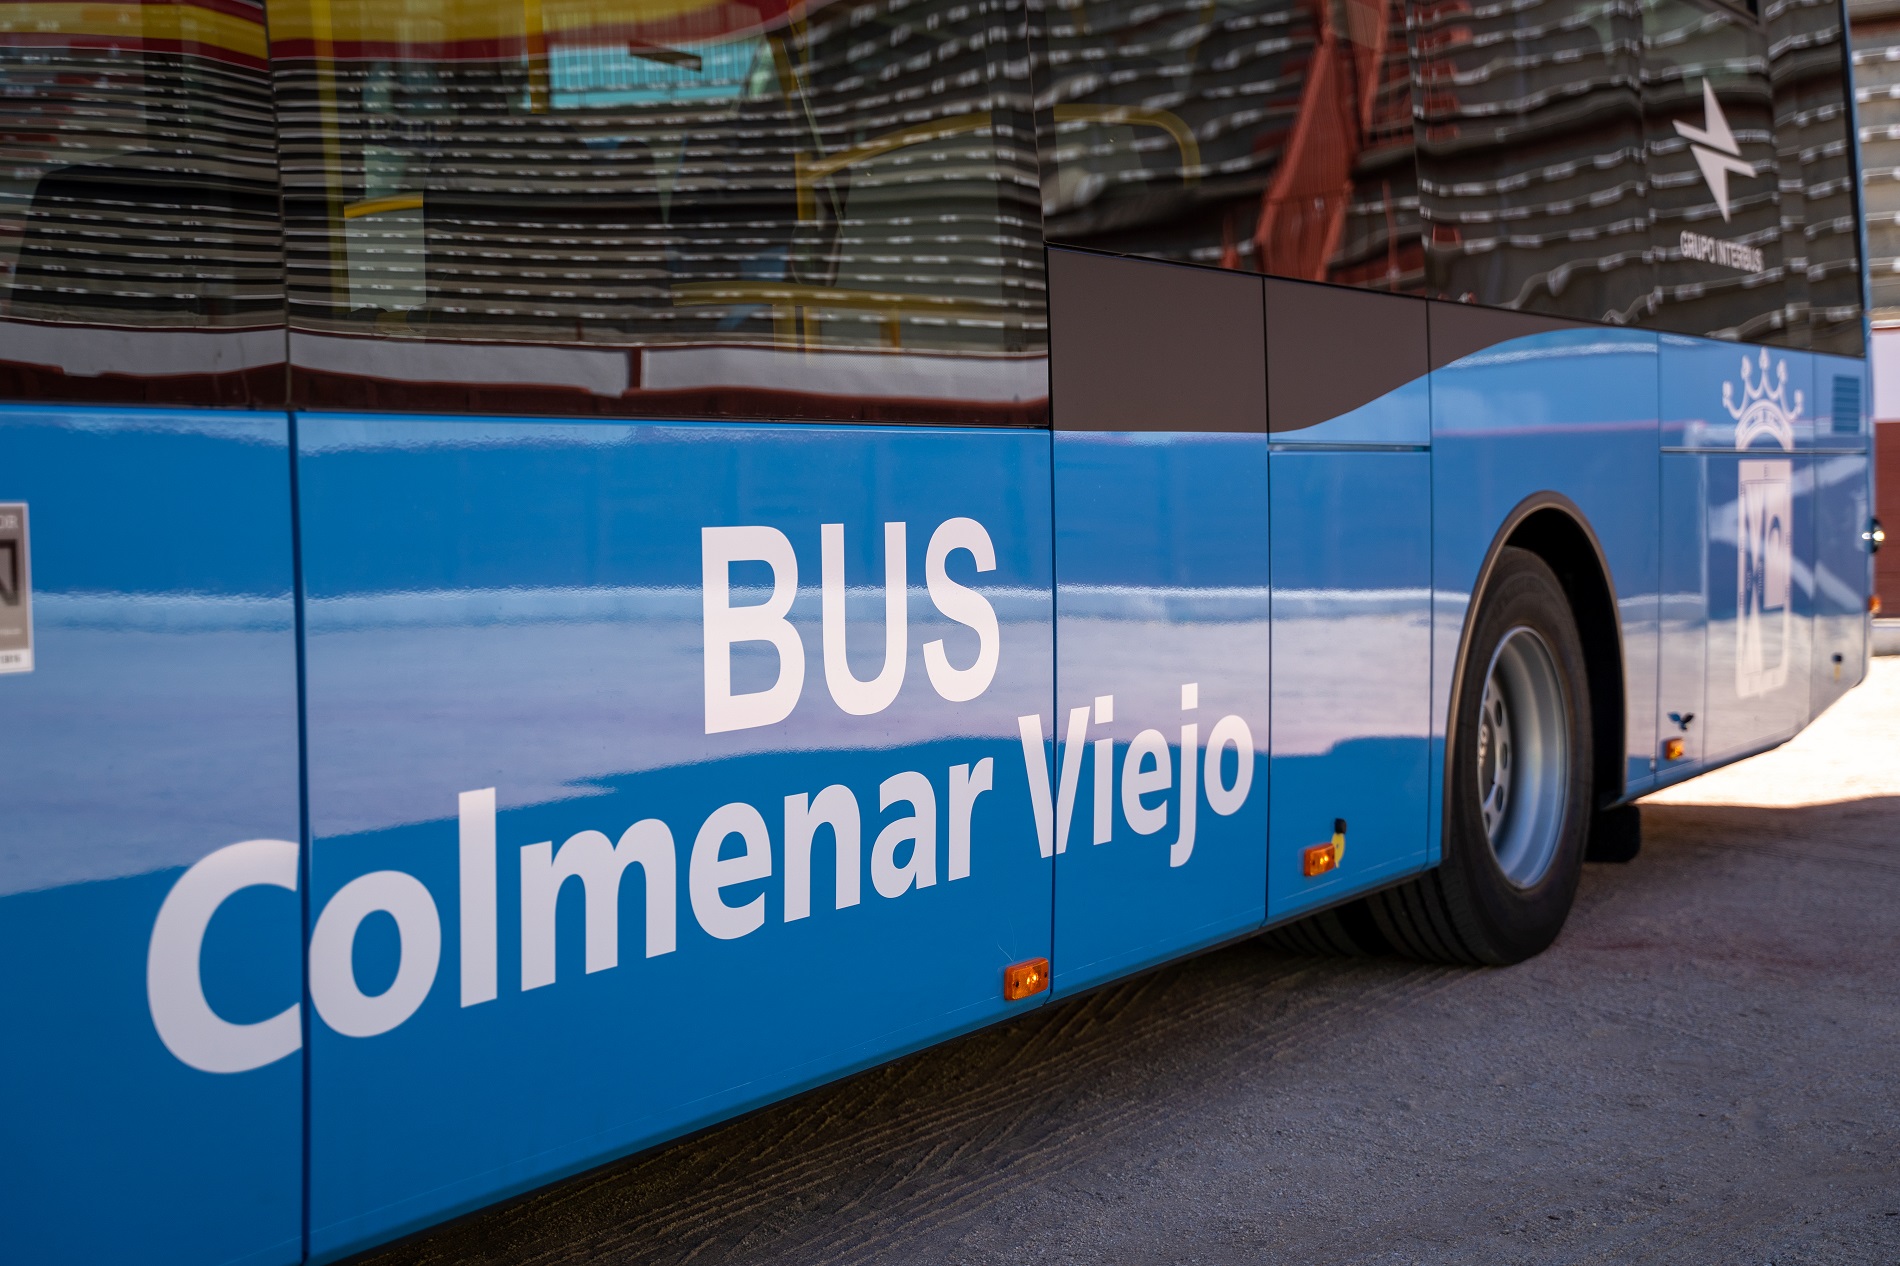 Colmenar Viejo habilita para Carnavales un servicio extraordinario de autobuses lanzadera que conecta la Estación de Renfe-Cercanías